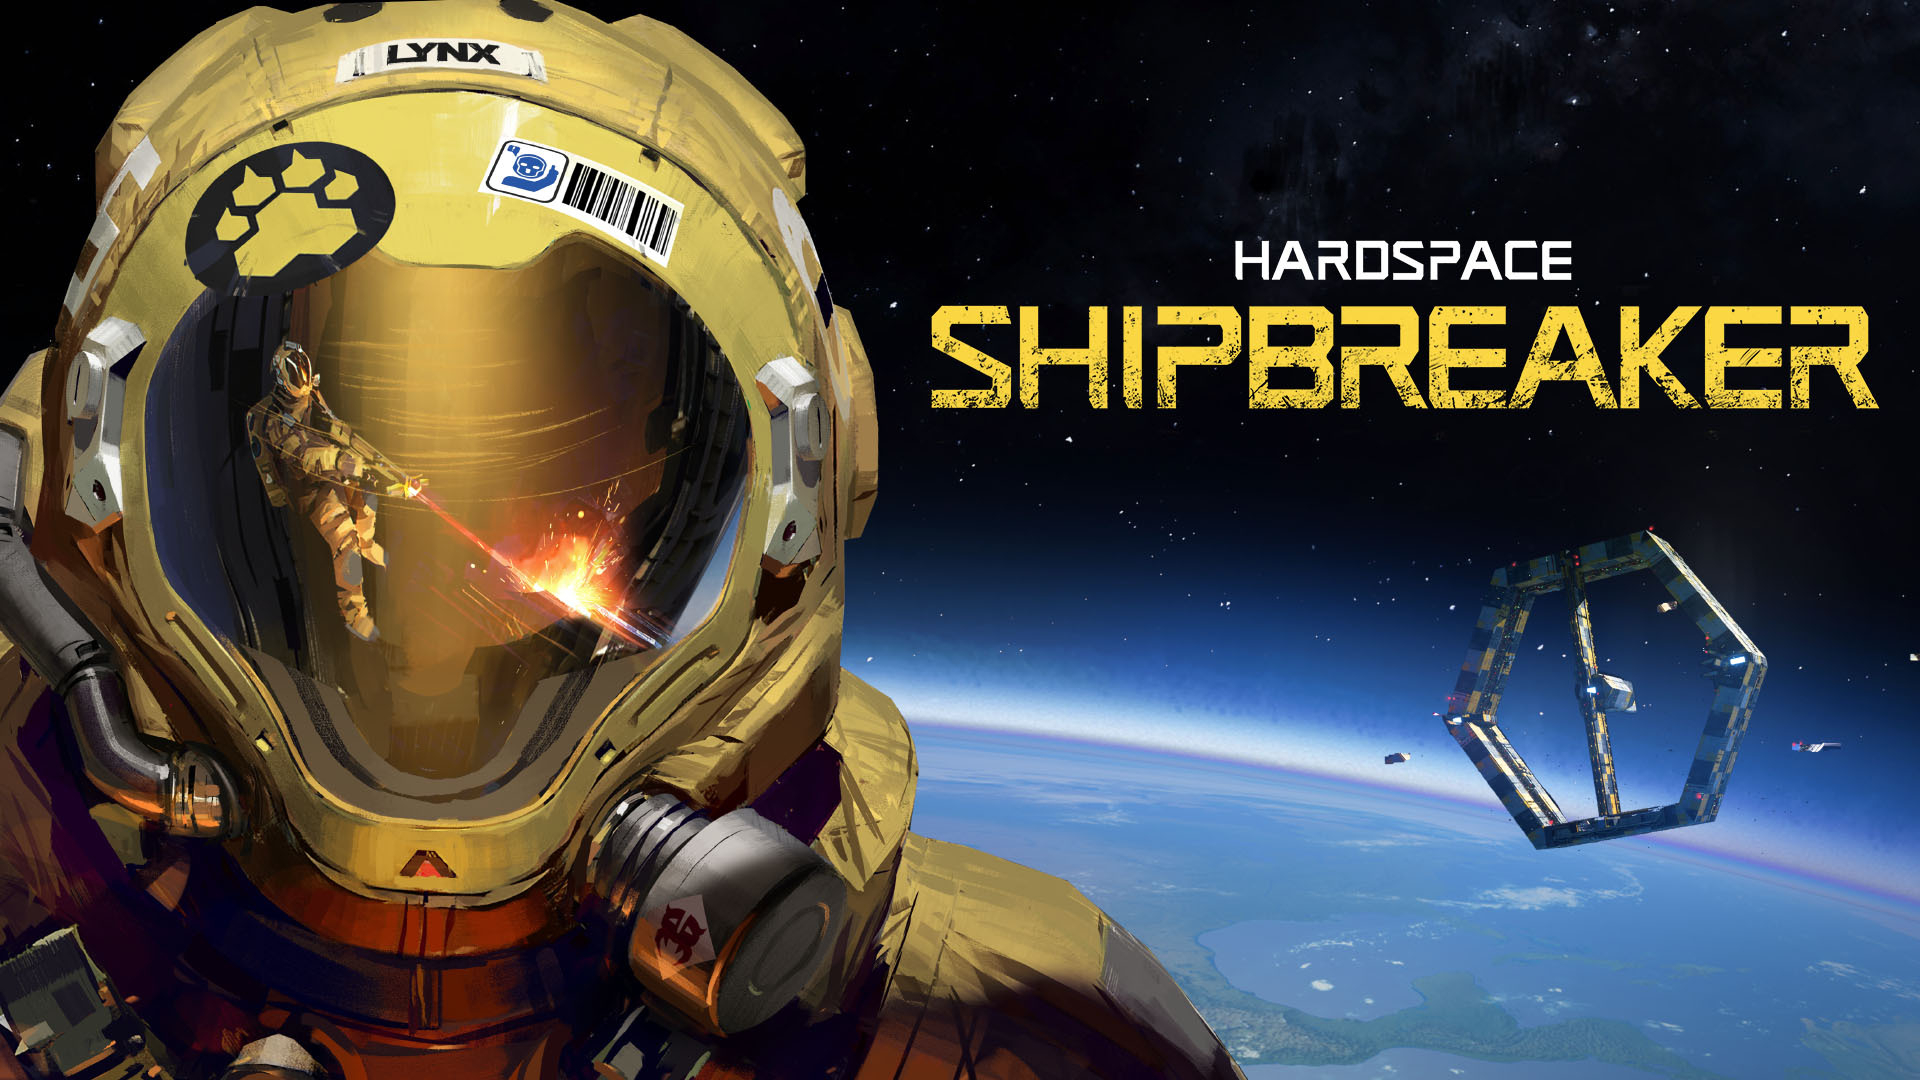     Hardspace: Shipbreaker    24 